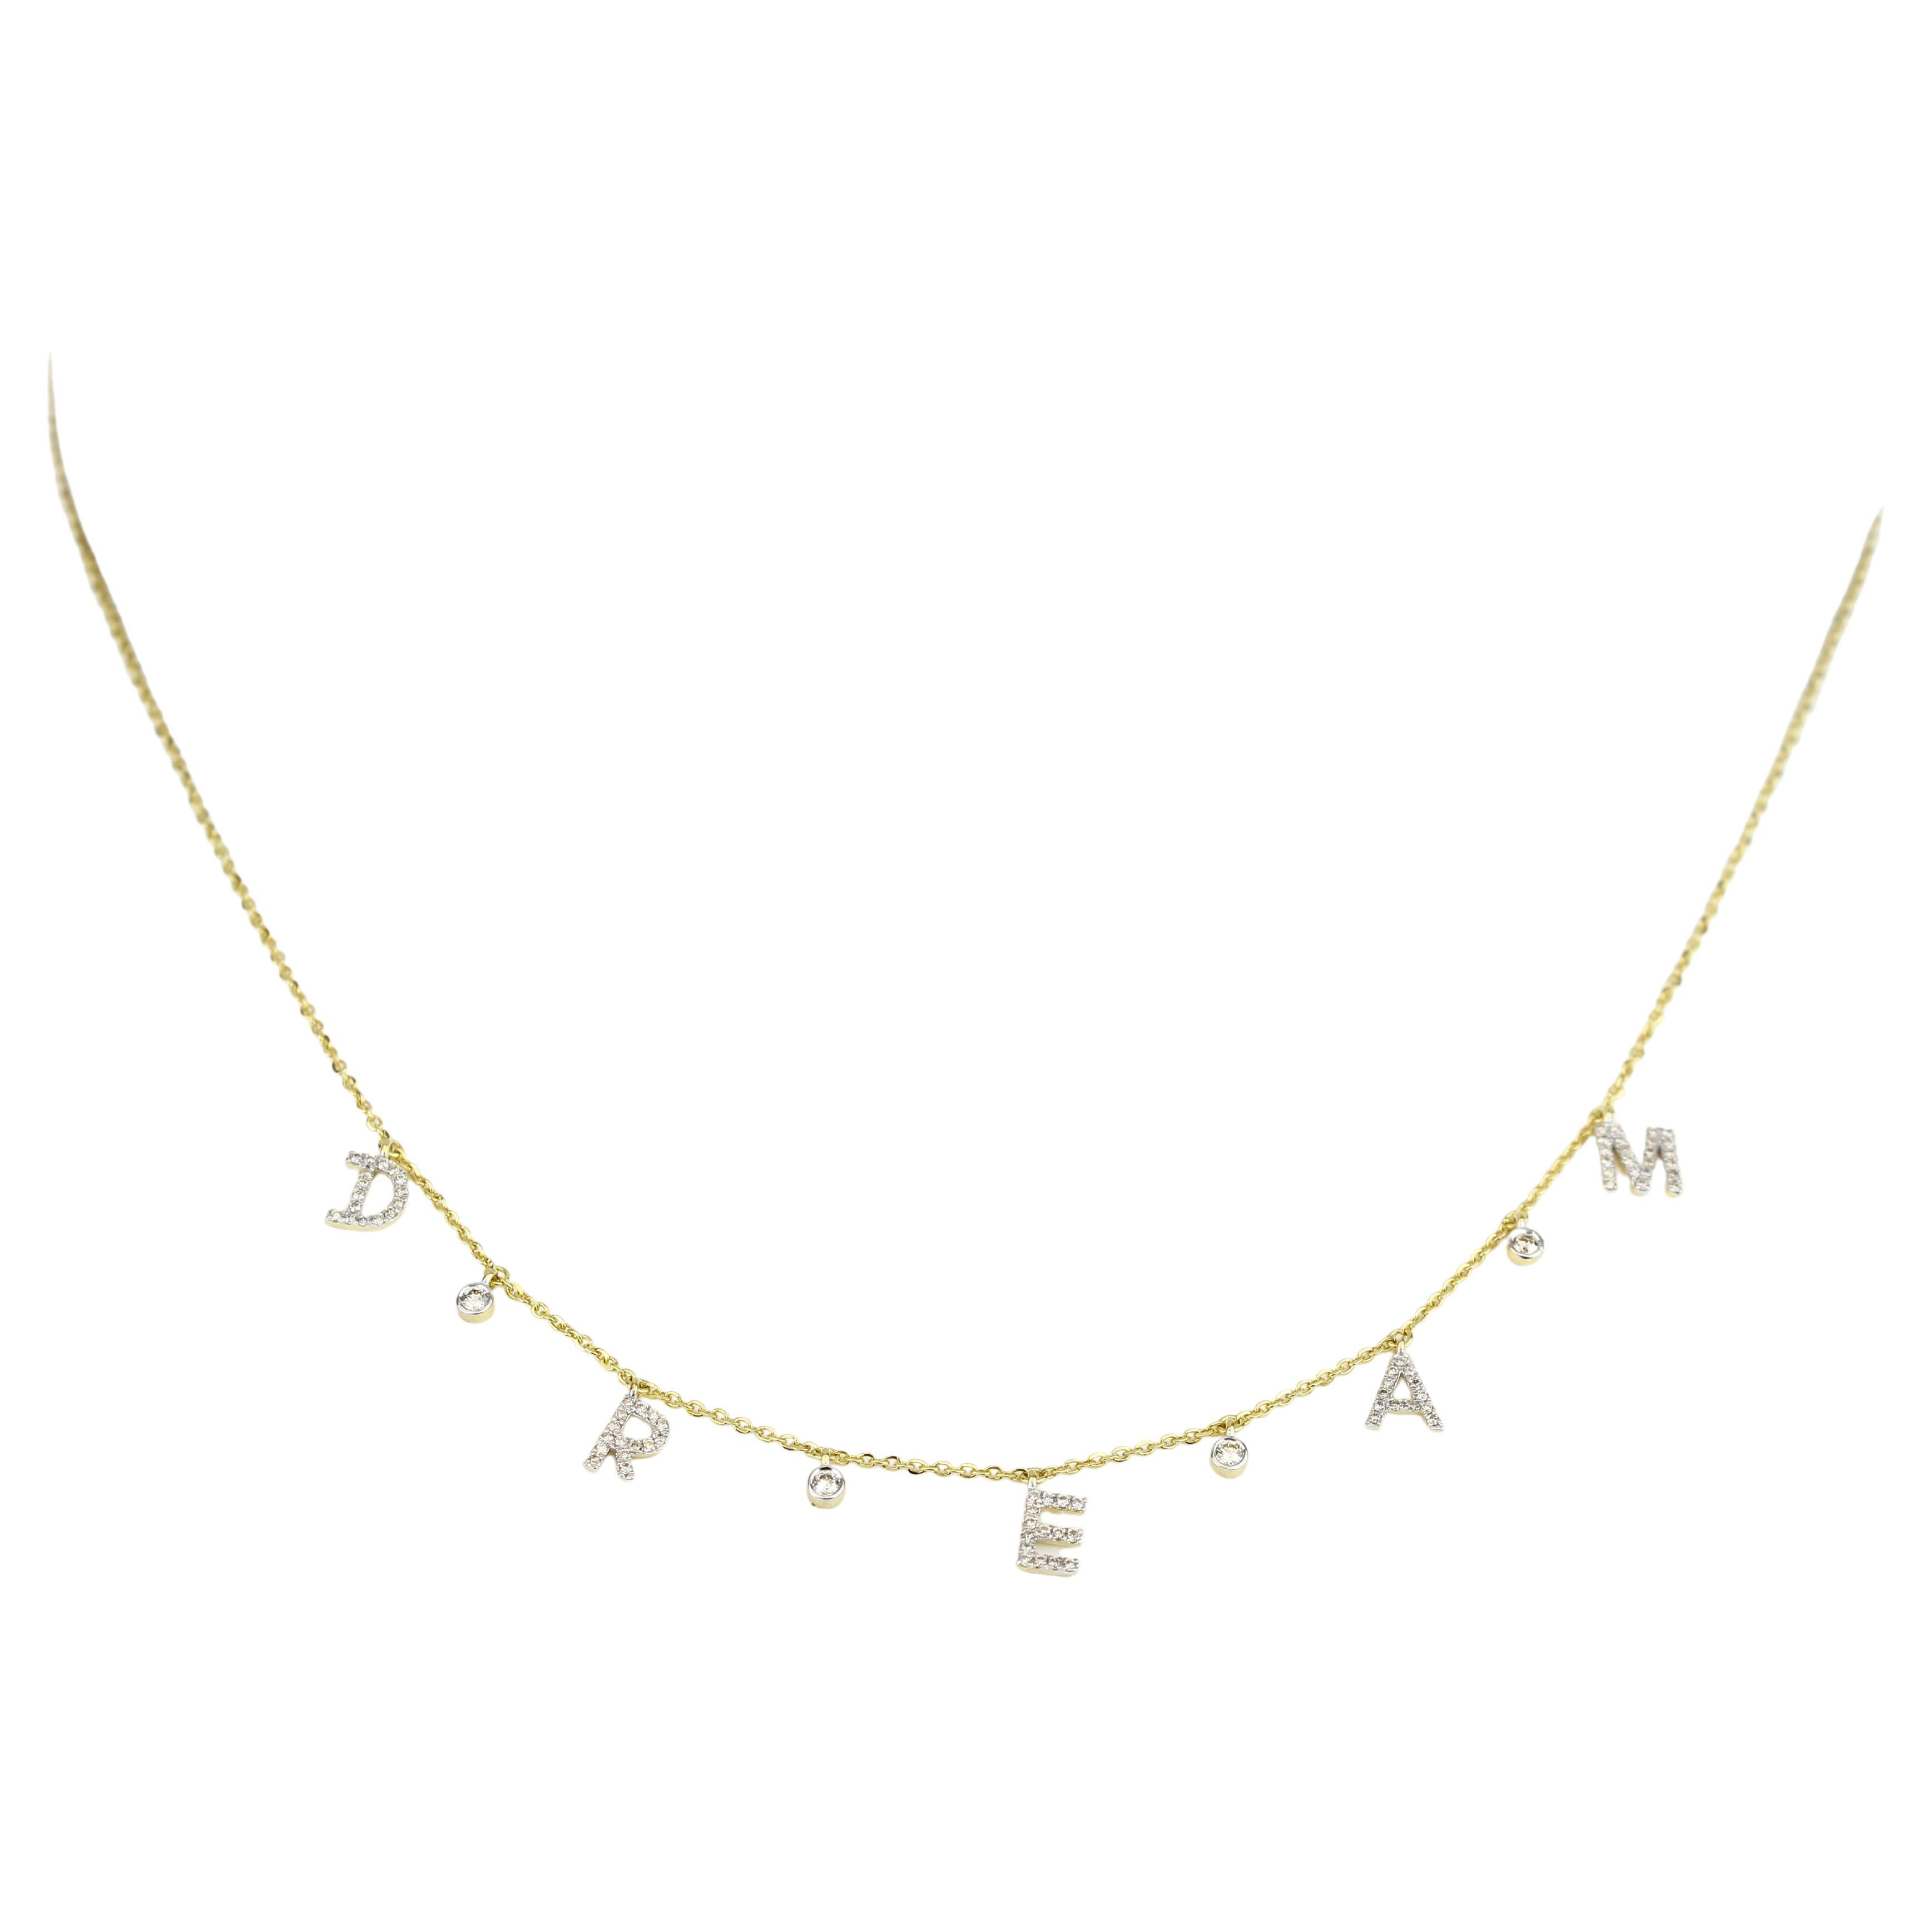 Diamant-Traum-Buchstaben-Halskette aus 18k massivem Gold